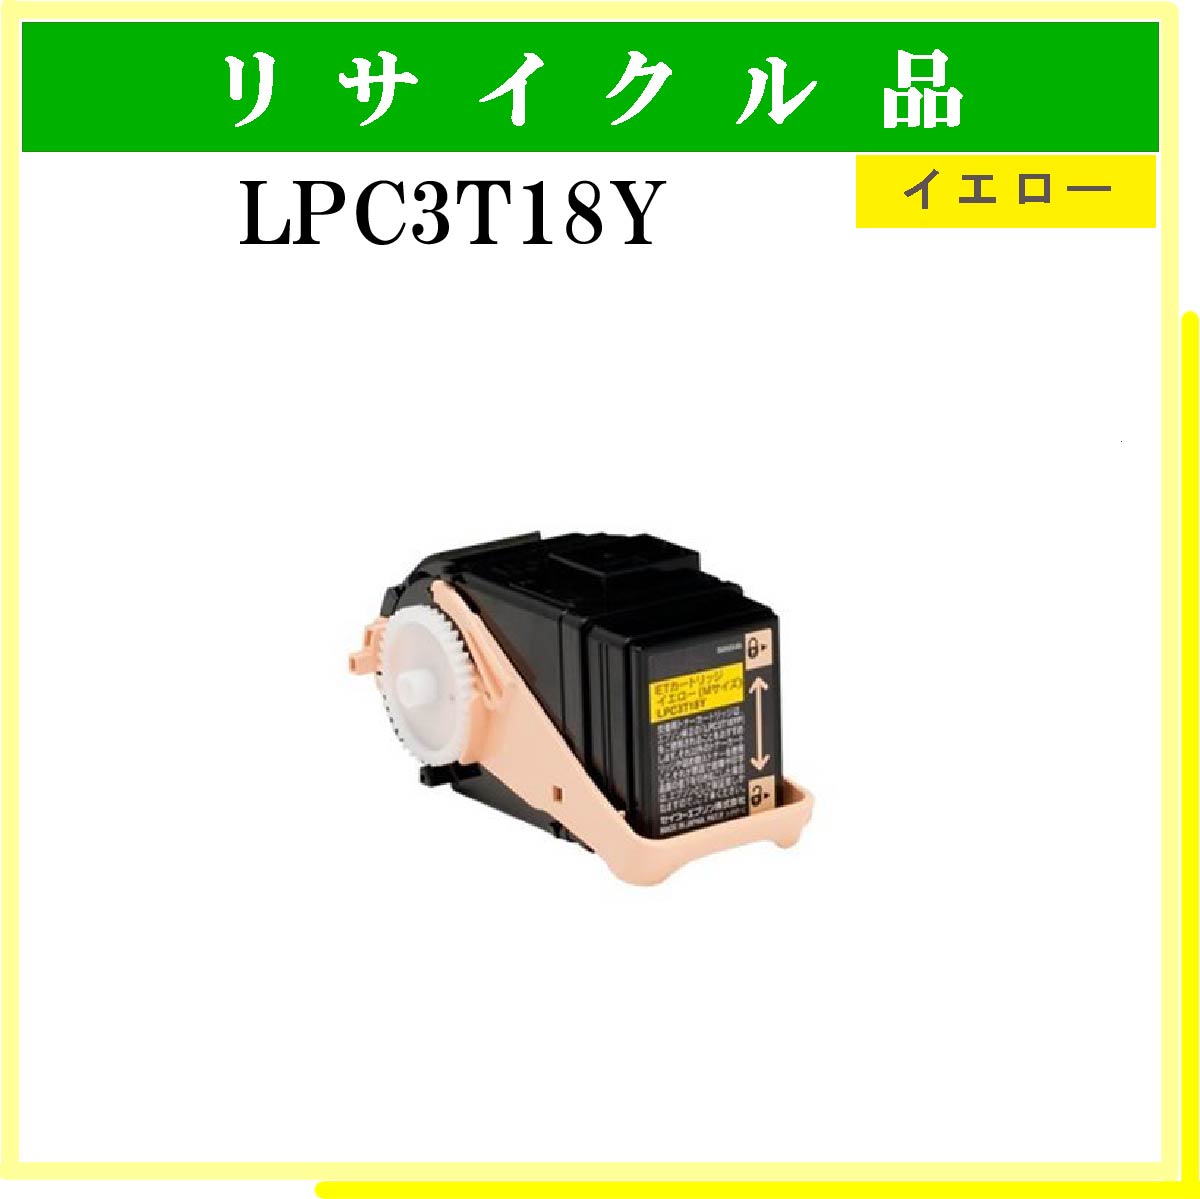 LPC3T18Y